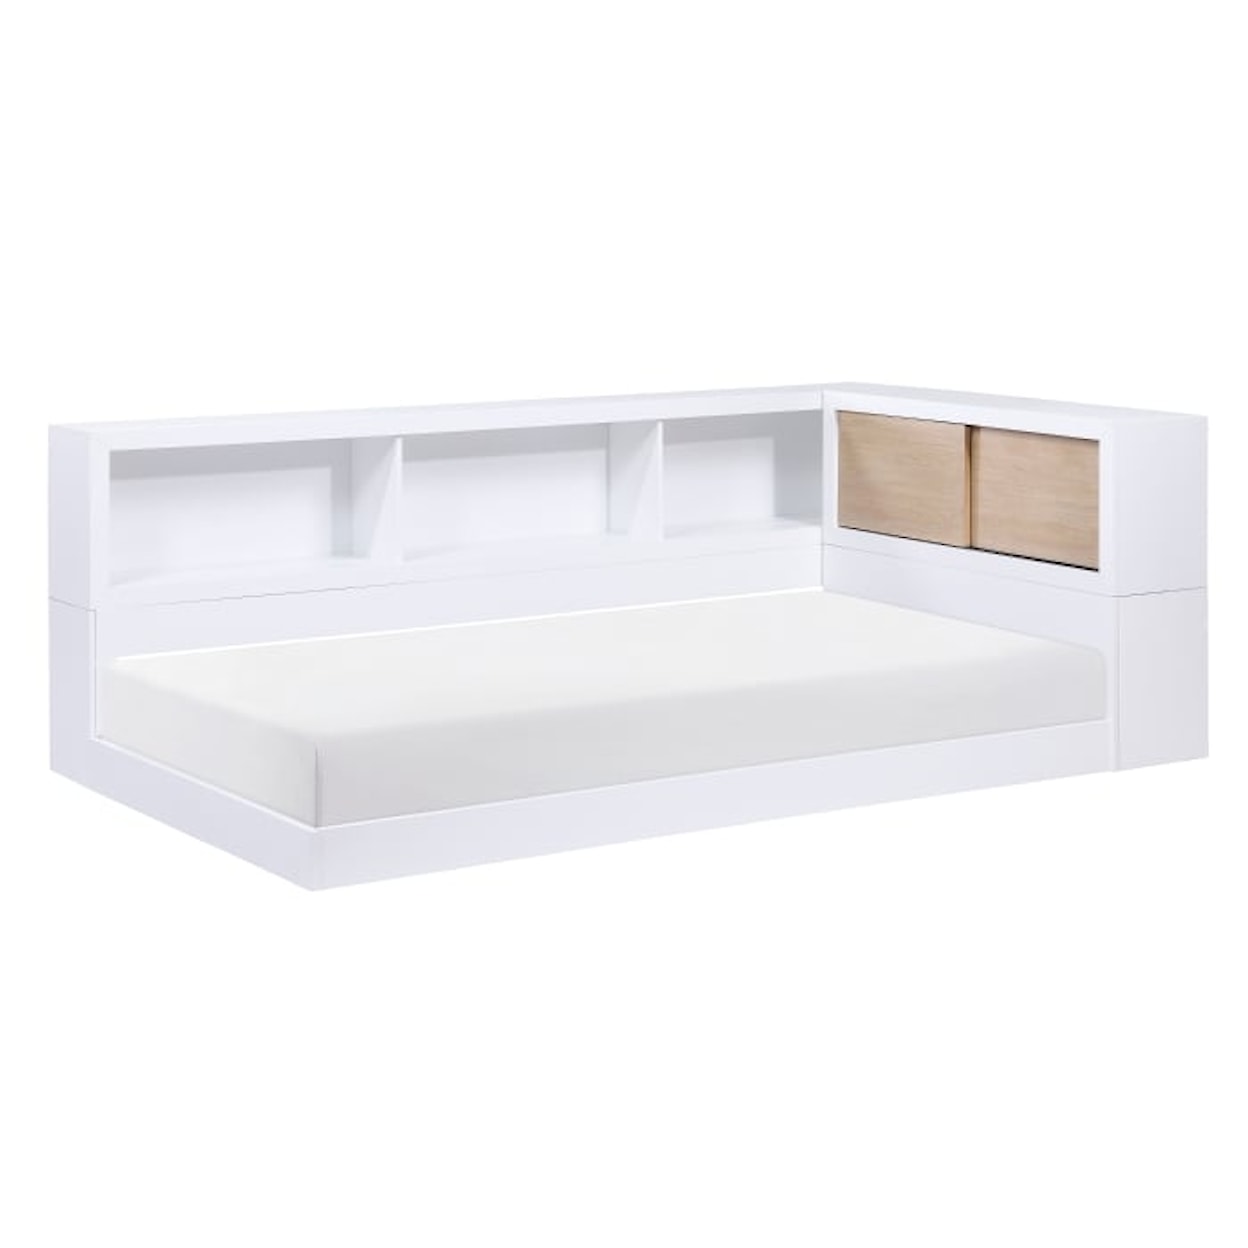 Homelegance Furniture Asker Twin Bookcase Corner Bed